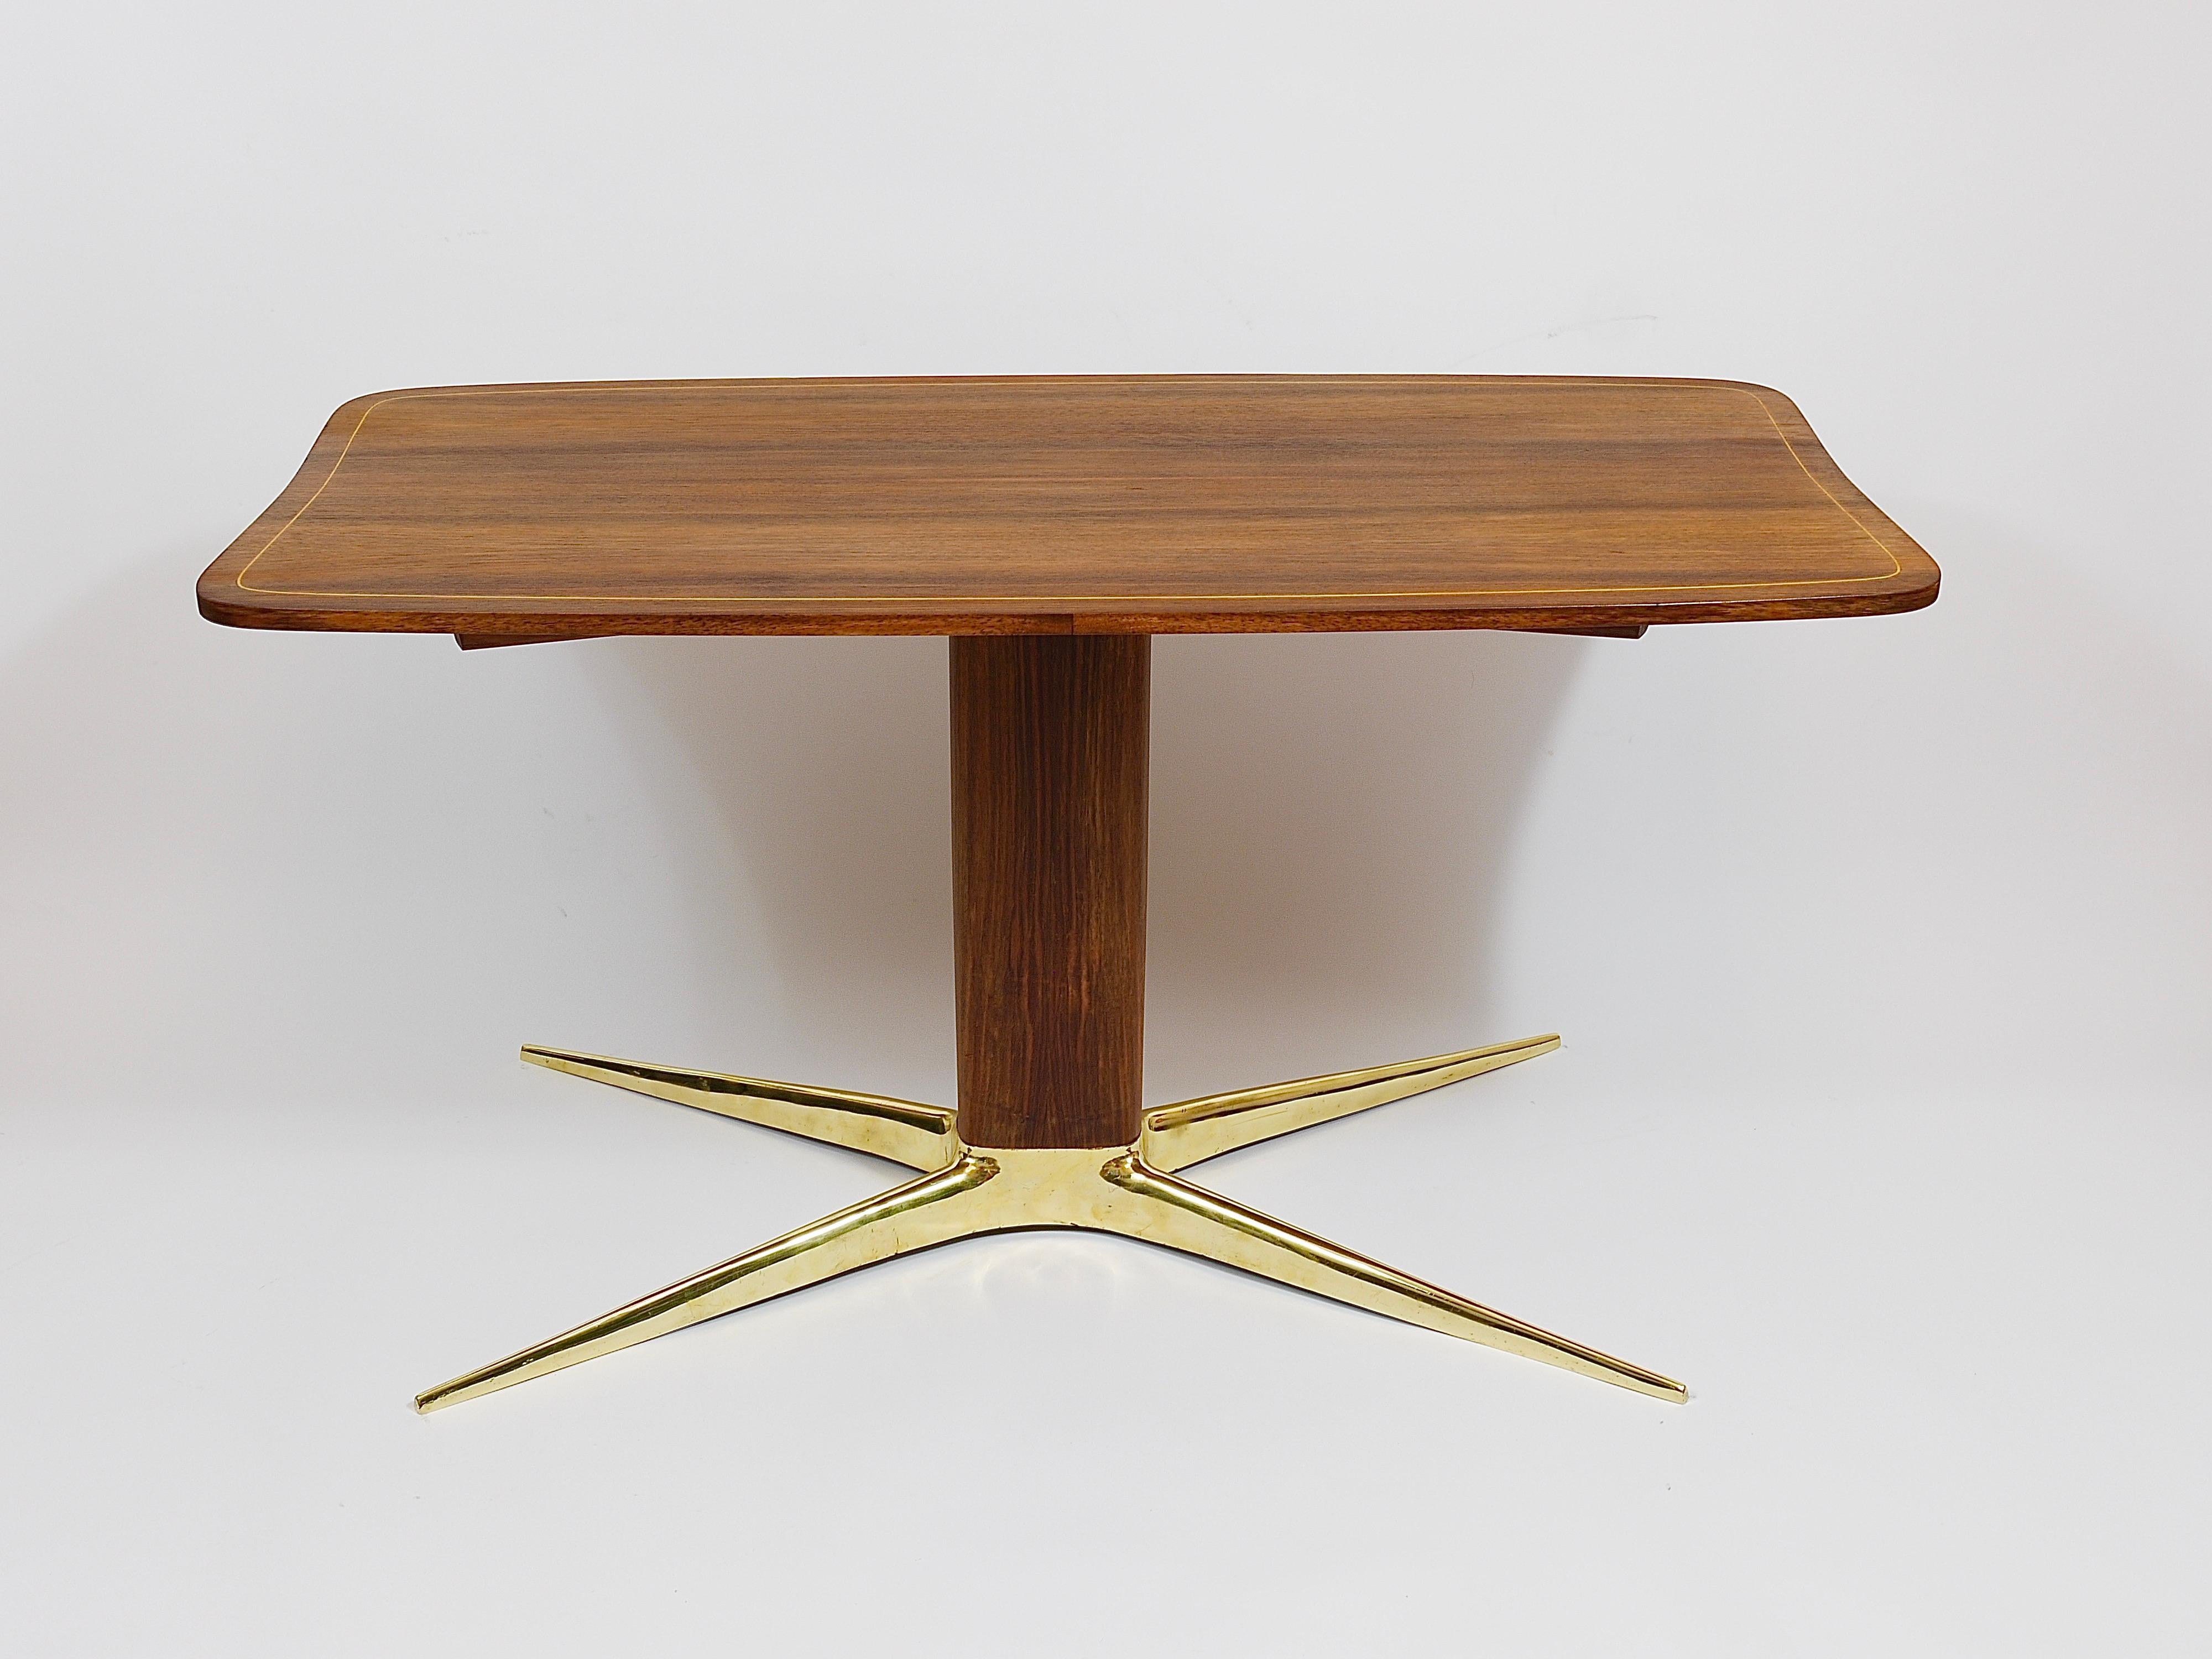 Ein eleganter Couchtisch oder Sofatisch aus den 1950er Jahren, entworfen von dem österreichischen Architekten und Designer Oswald Haerdtl. Ein wunderschöner Tisch mit einer schön geschwungenen Platte, einem ovalen Nussbaum-Mittelsteg und dem